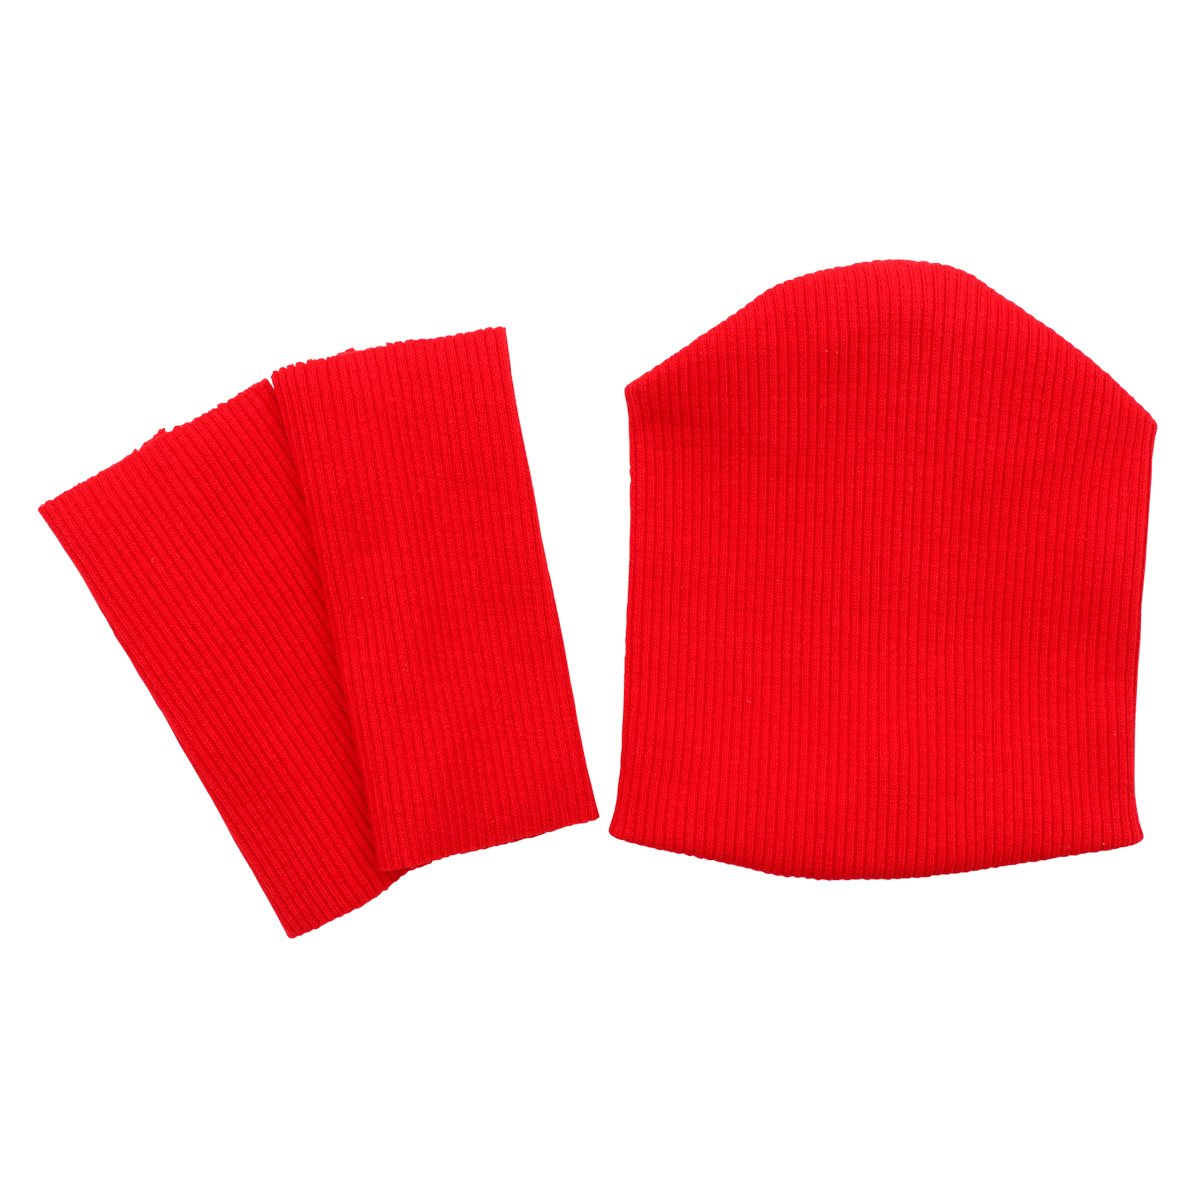 28875 Комплект одежды для игрушек красный: шапка (9,5*10 см), гетры (3*8 см) 28875 комплект одежды для игрушек цв серый шапка гетры 9 5см 10см 3см 8см